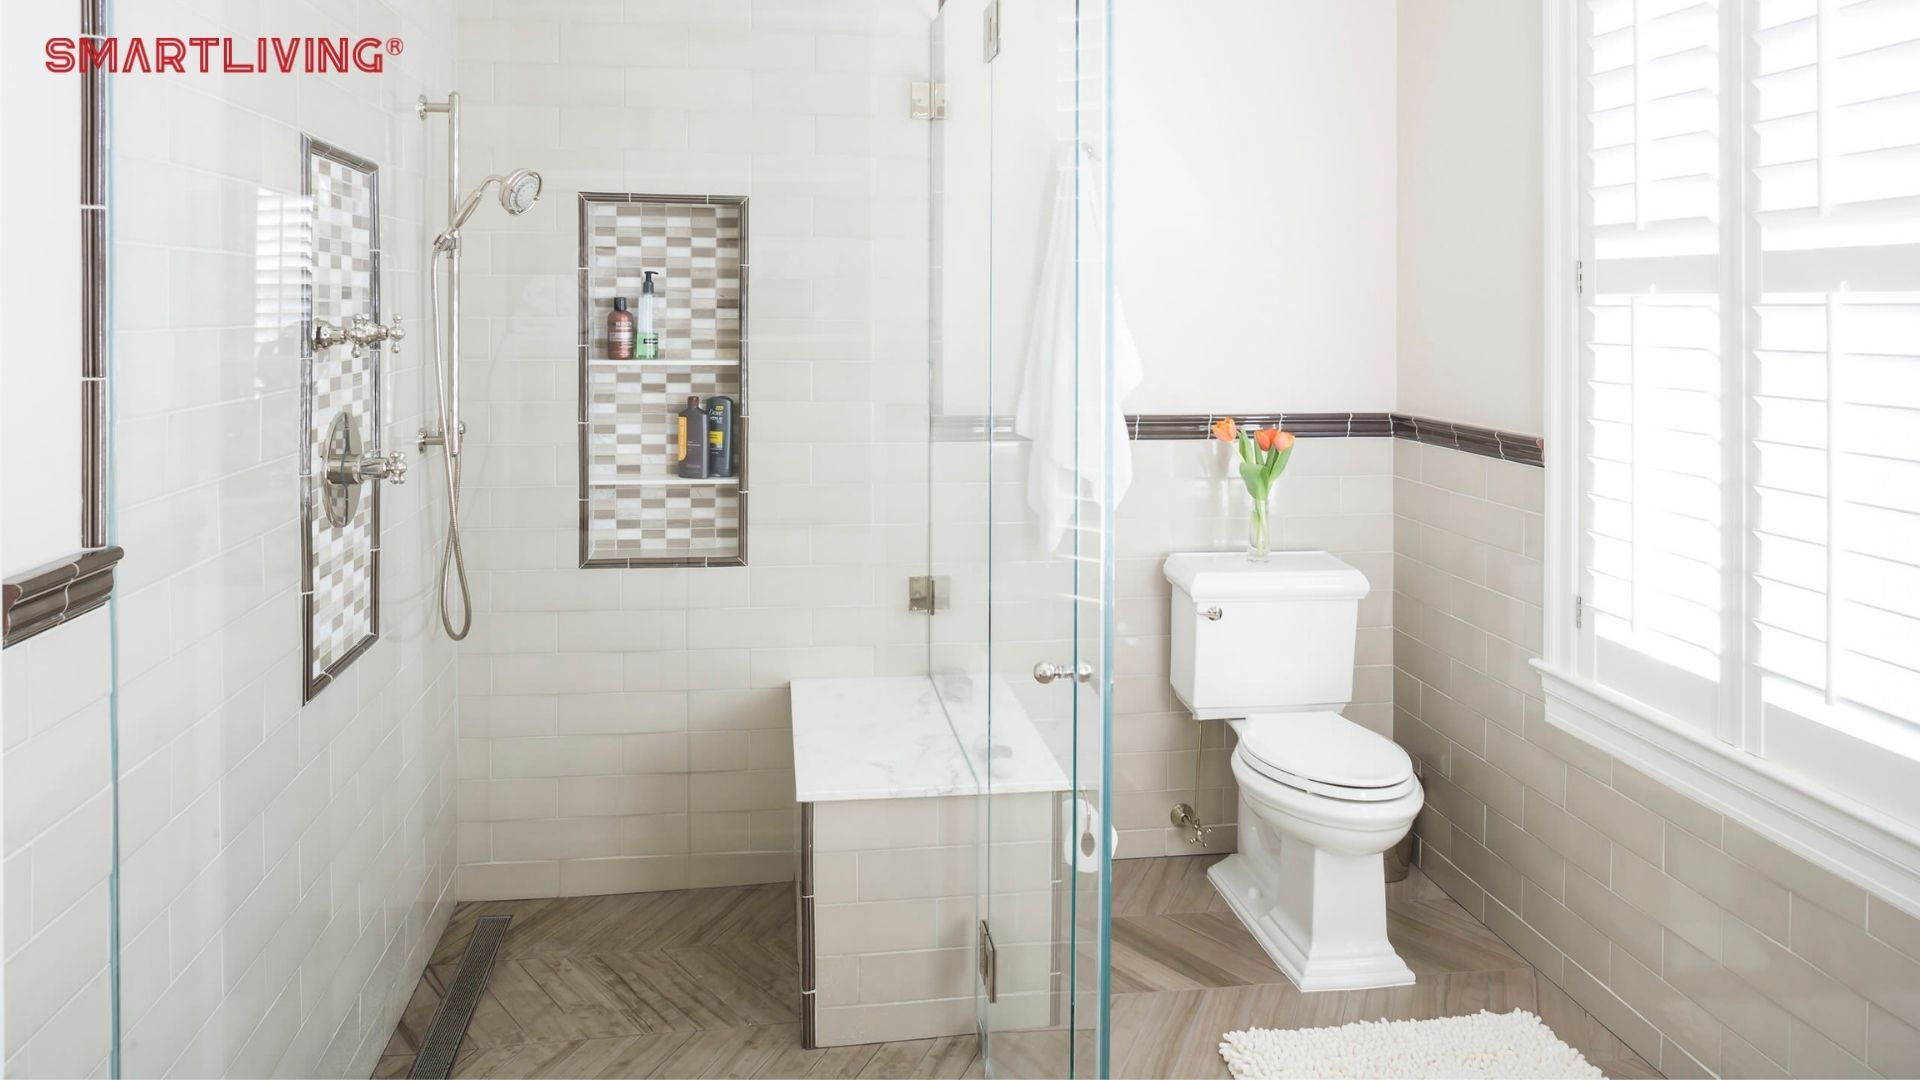 Việc ngăn cách hai không gian tắm và vệ sinh sẽ giúp người dùng cảm thấy thuận tiện, thoải mái, sạch sẽ hơn